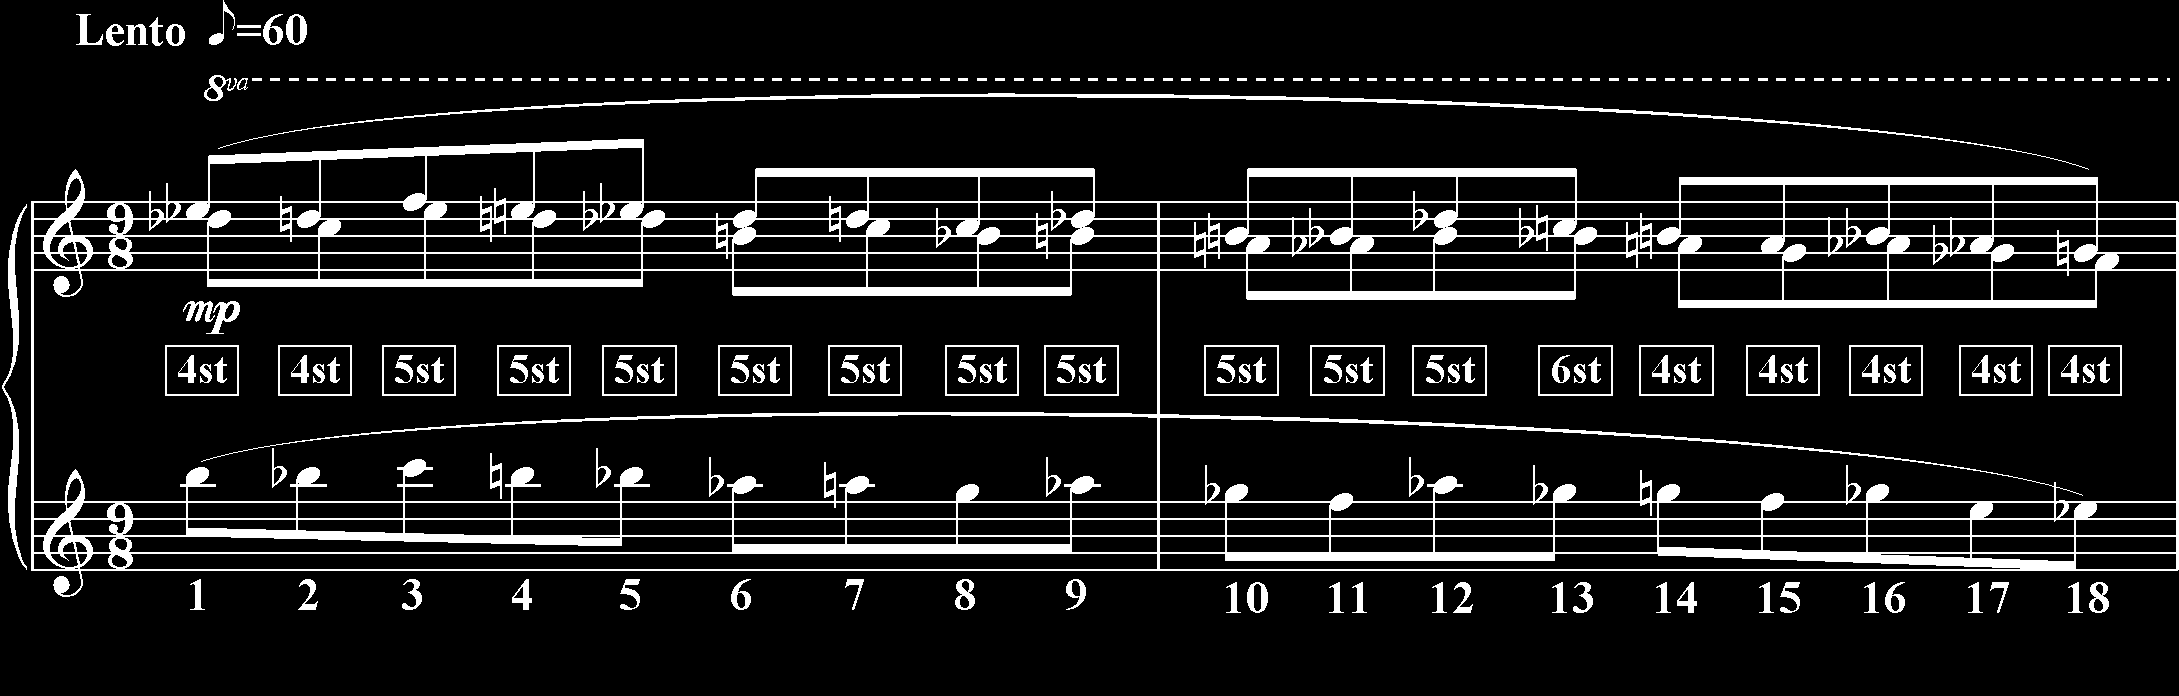 32 Claves n. 4 - Novembro de 2007 Gráfico 1 - Variação do âmbito nos quatro primeiros compassos da peça.